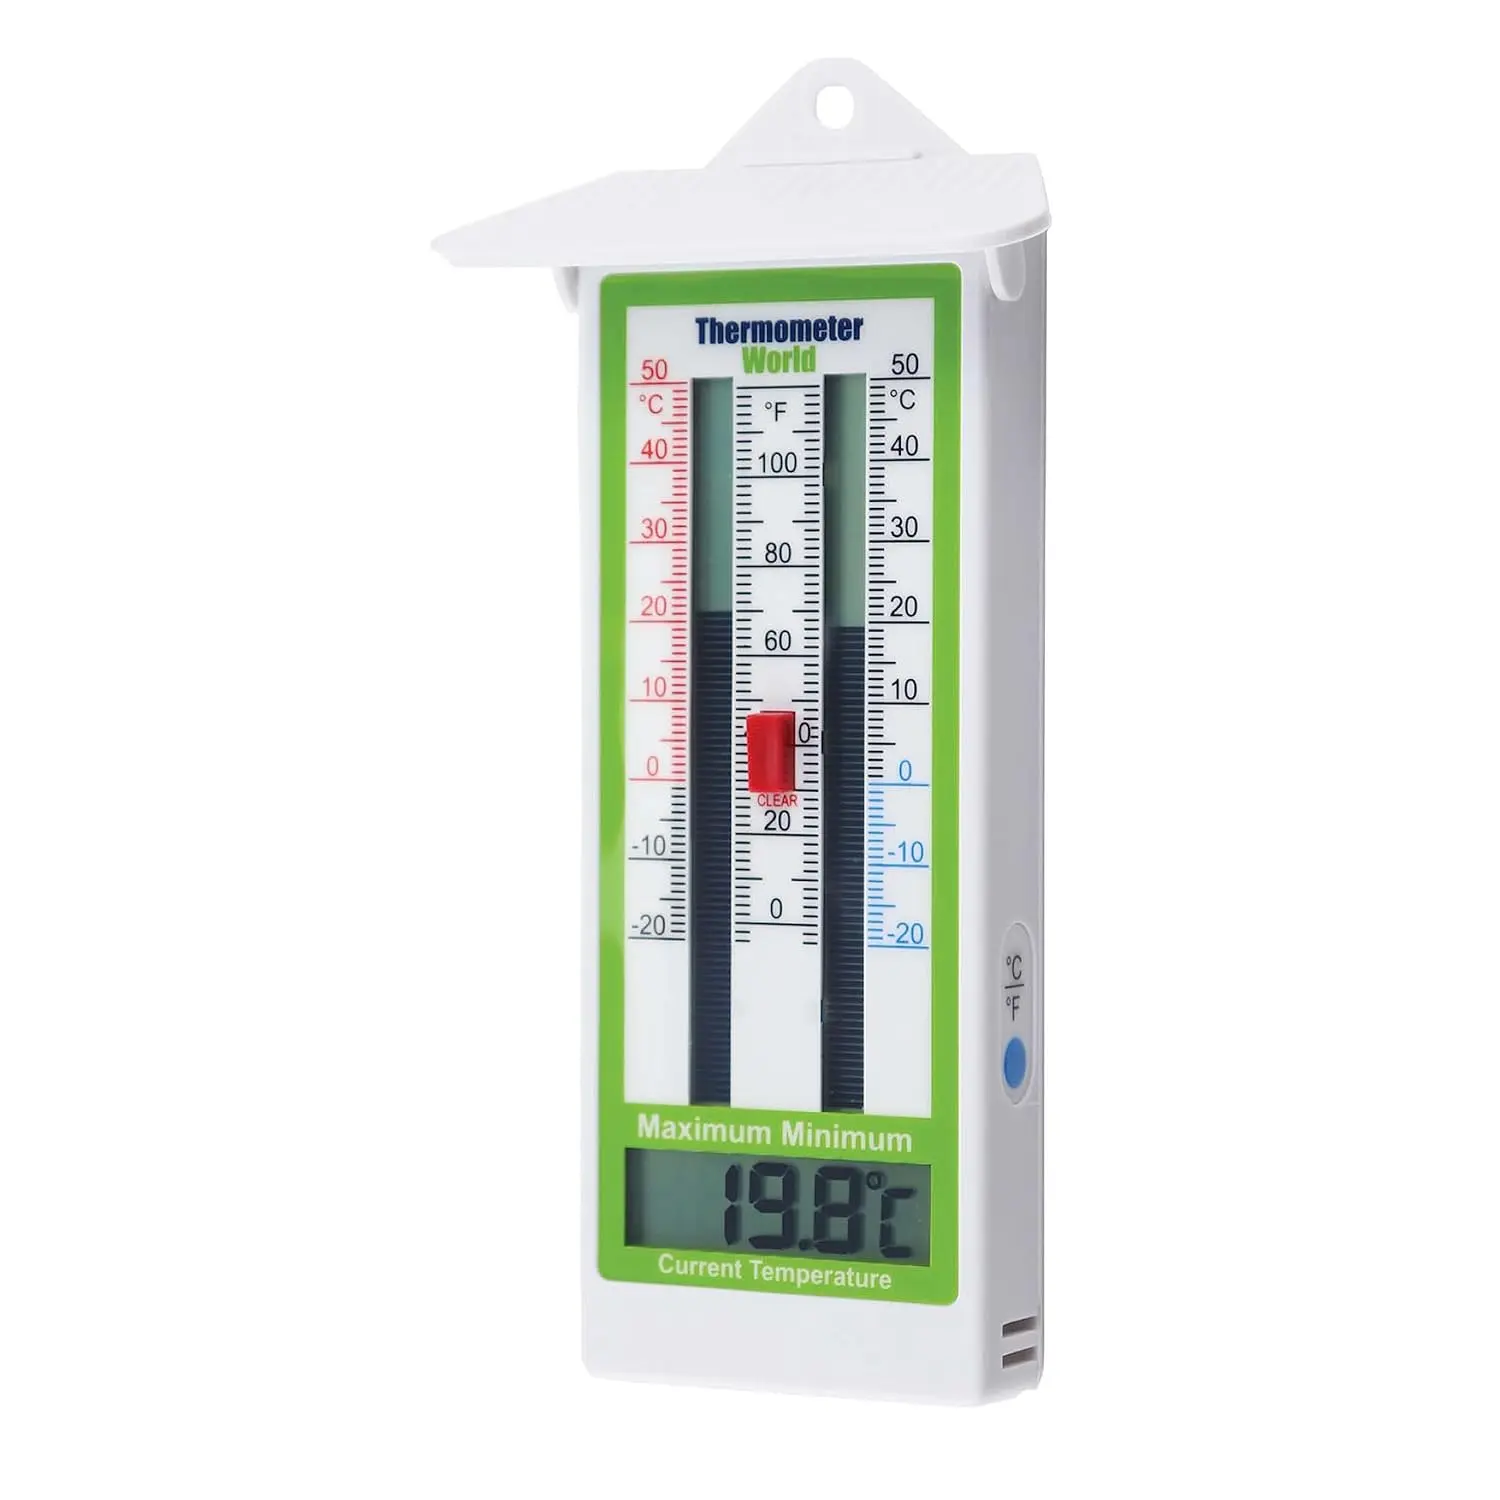 https://crondallweather.co.uk/WP/wp-content/uploads/2021/01/Greenhouse-thermometer.webp